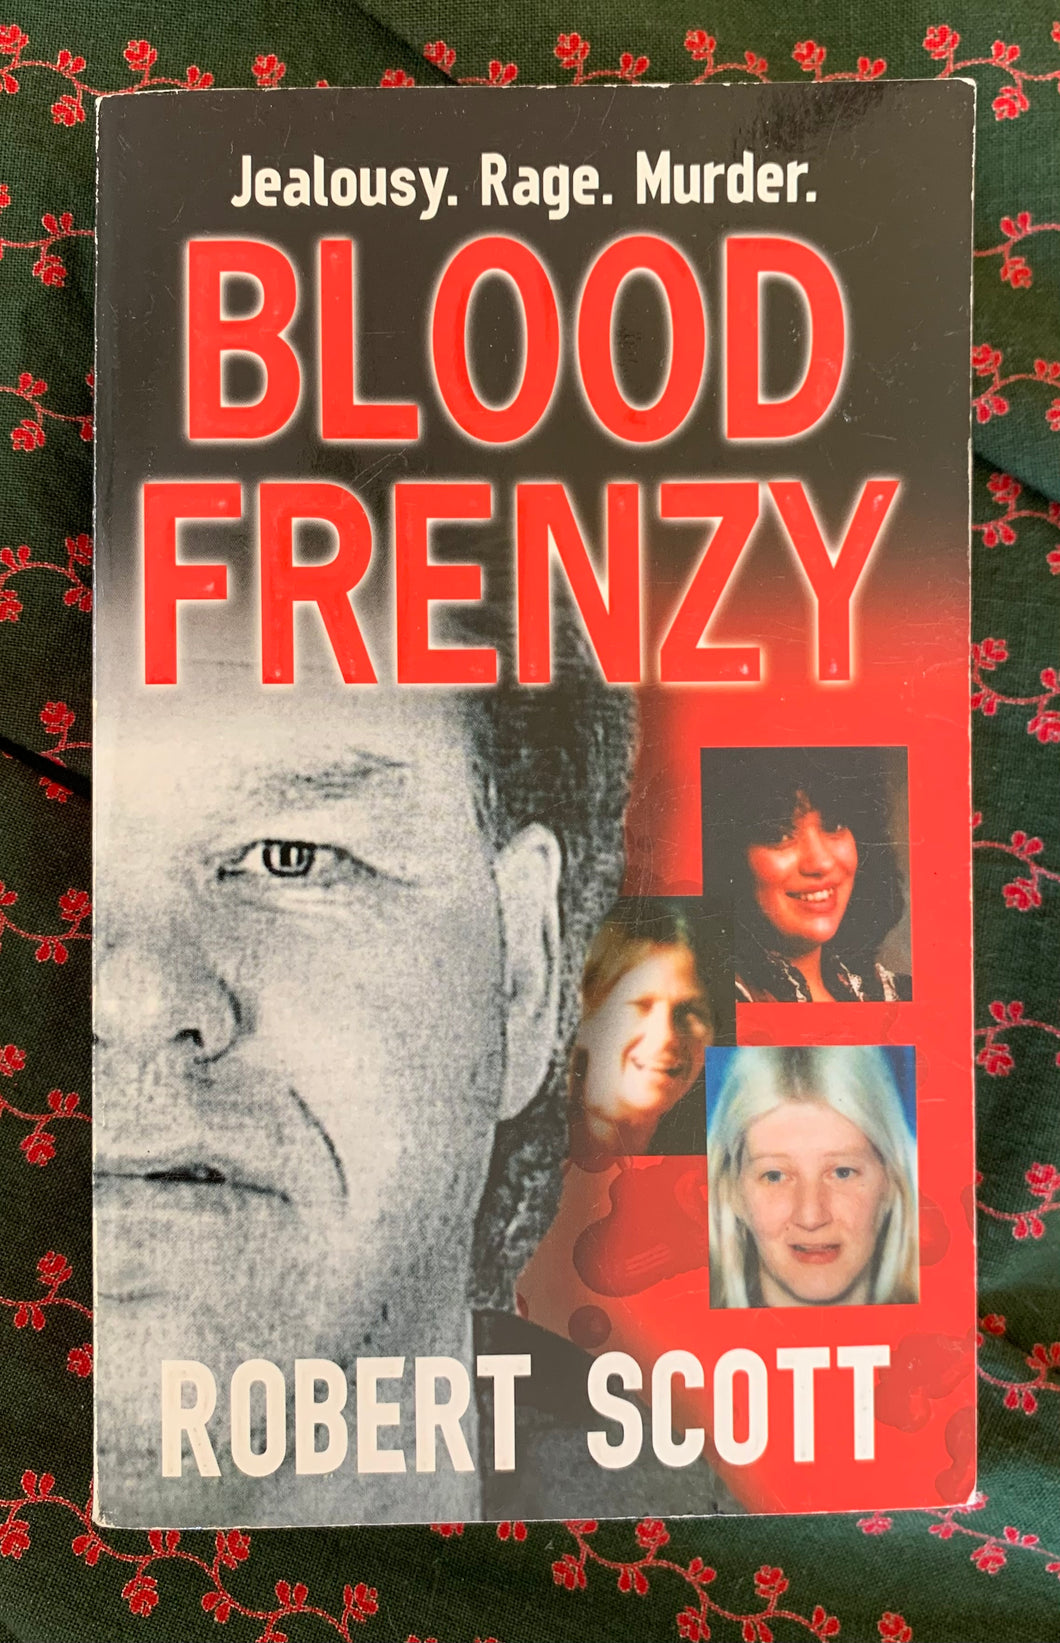 Blood Frenzy: Jealousy. Rage. Murder.